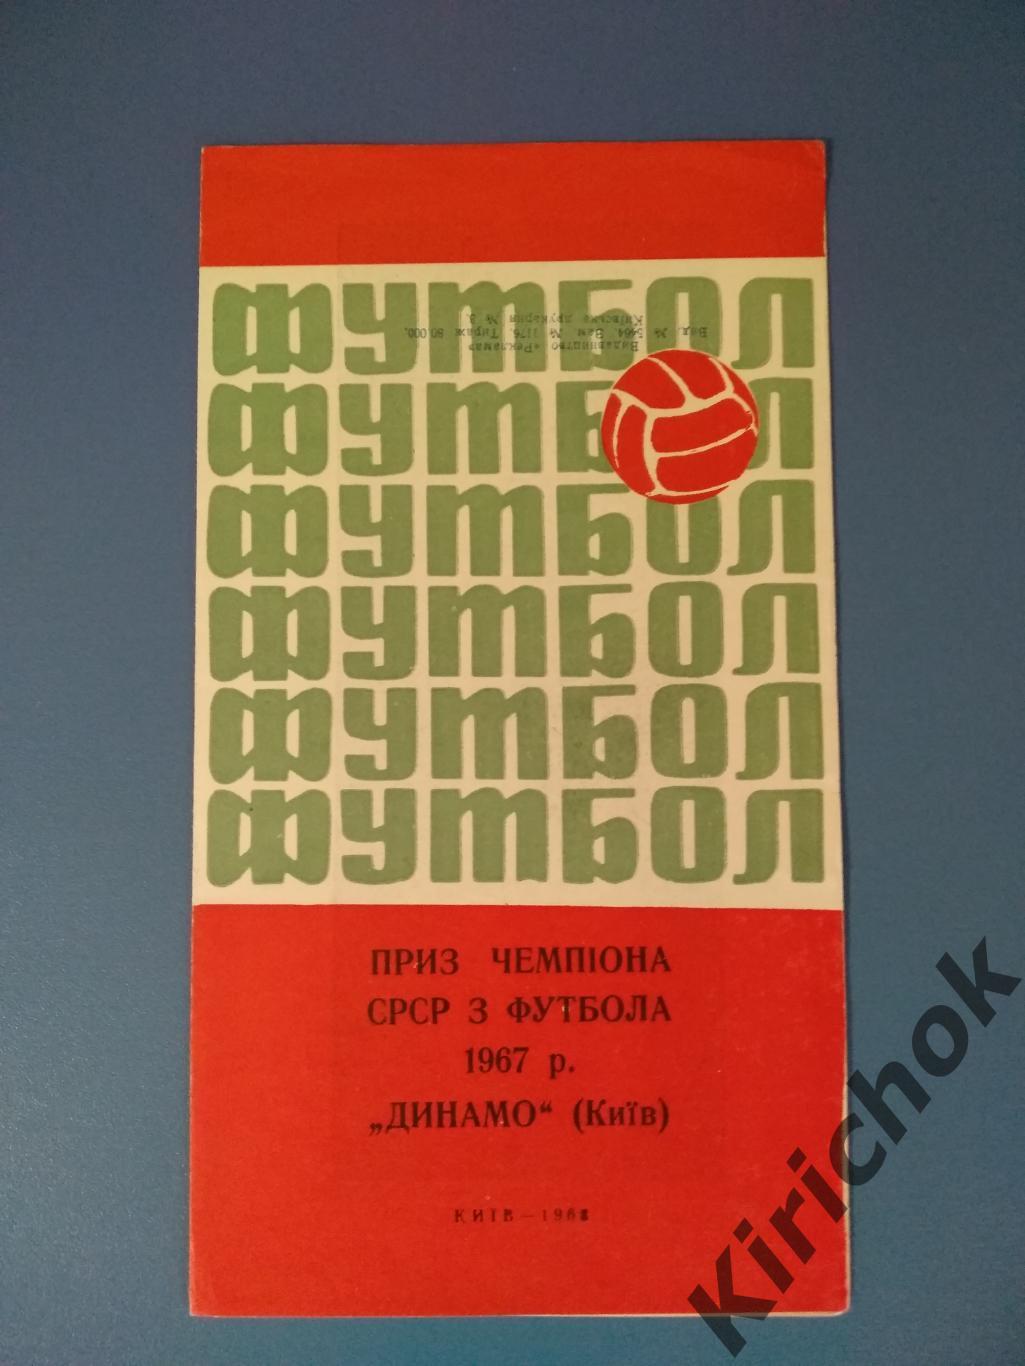 БРАК ПЕЧАТИ! Буклет: СССР. Киев 1968